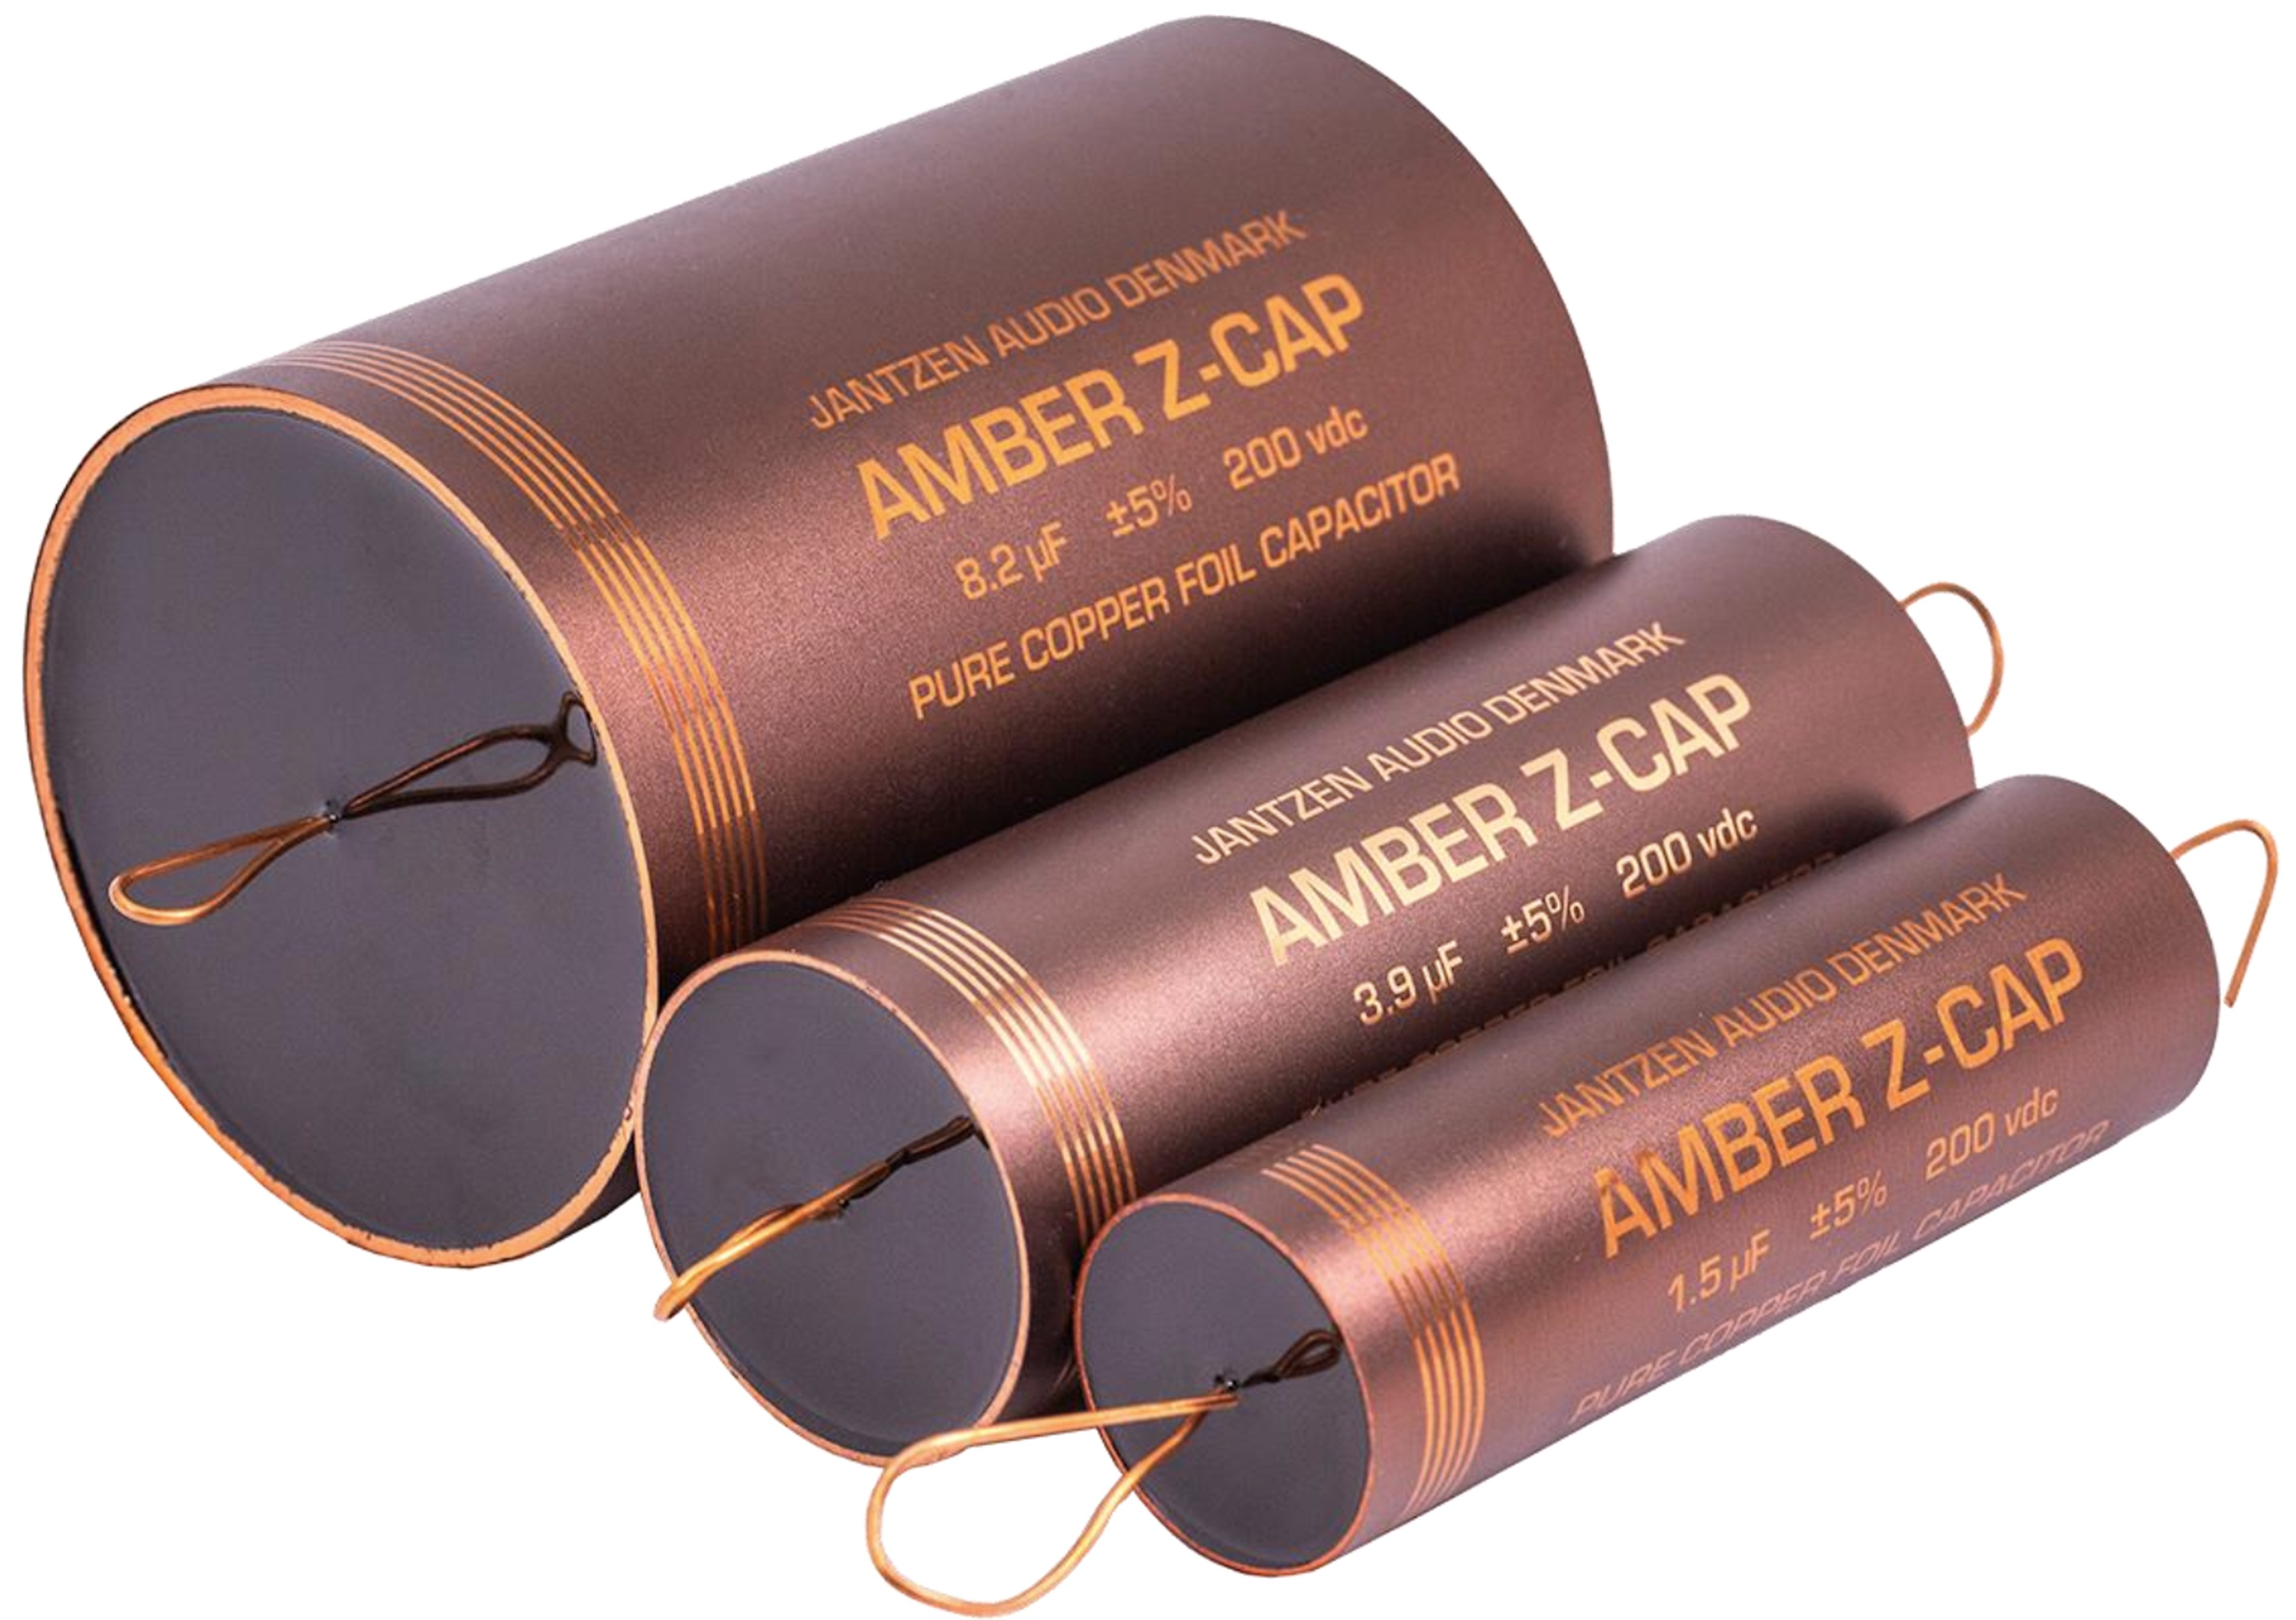 JANTZEN AUDIO AMBER Z-CAP 001-7237 Pure Copper Foil Capacitor Axial 200V 3.9µF